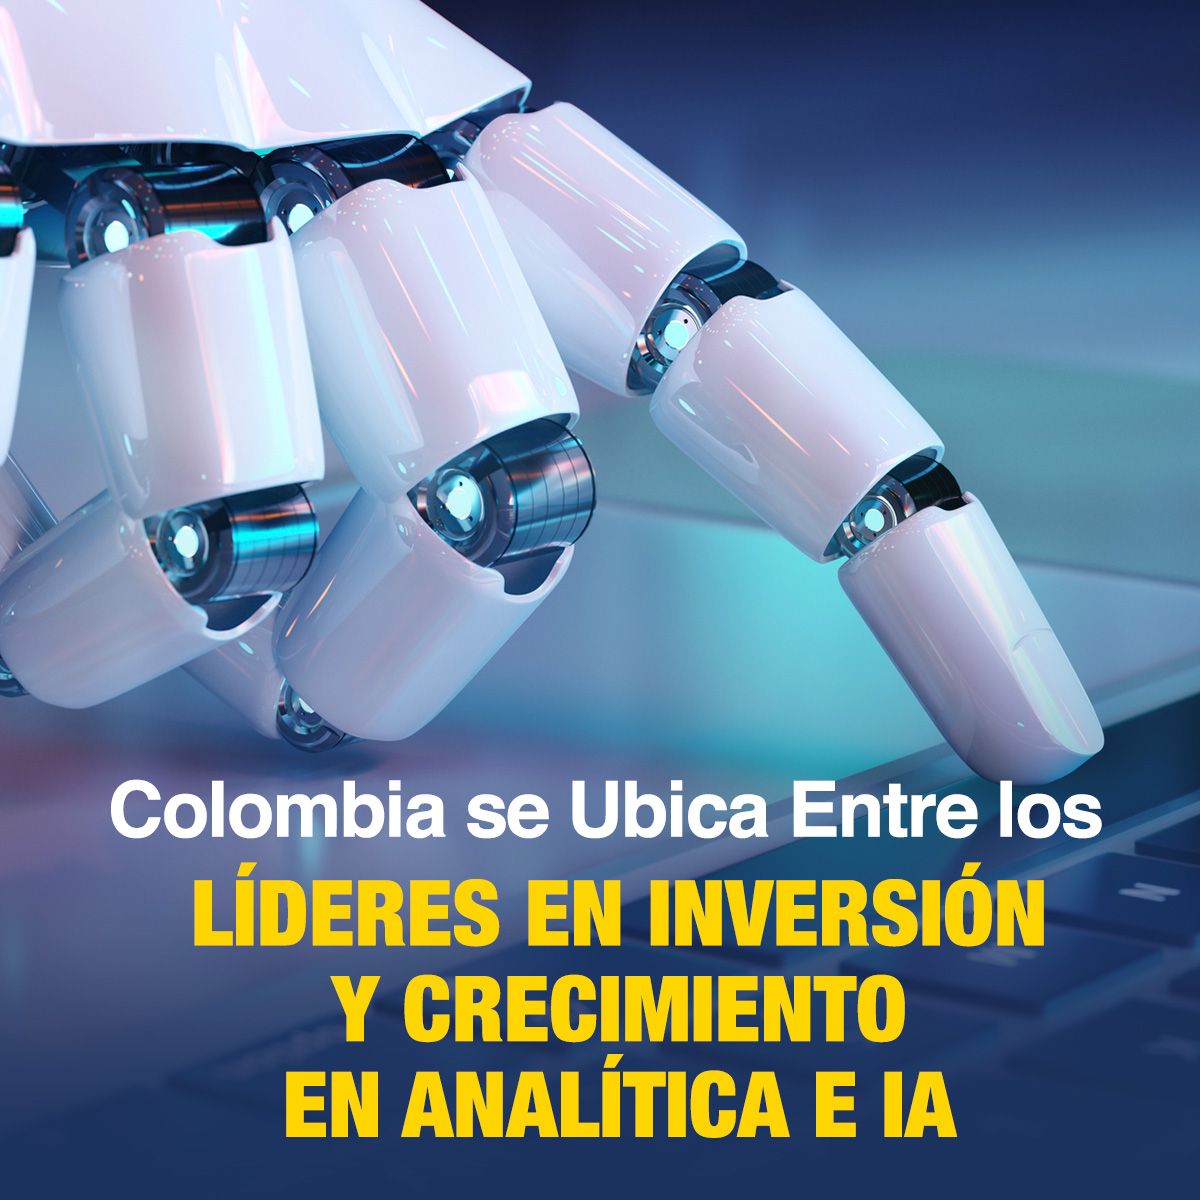 Colombia se Ubica Entre los Líderes en Inversión y Crecimiento en Analítica e IA